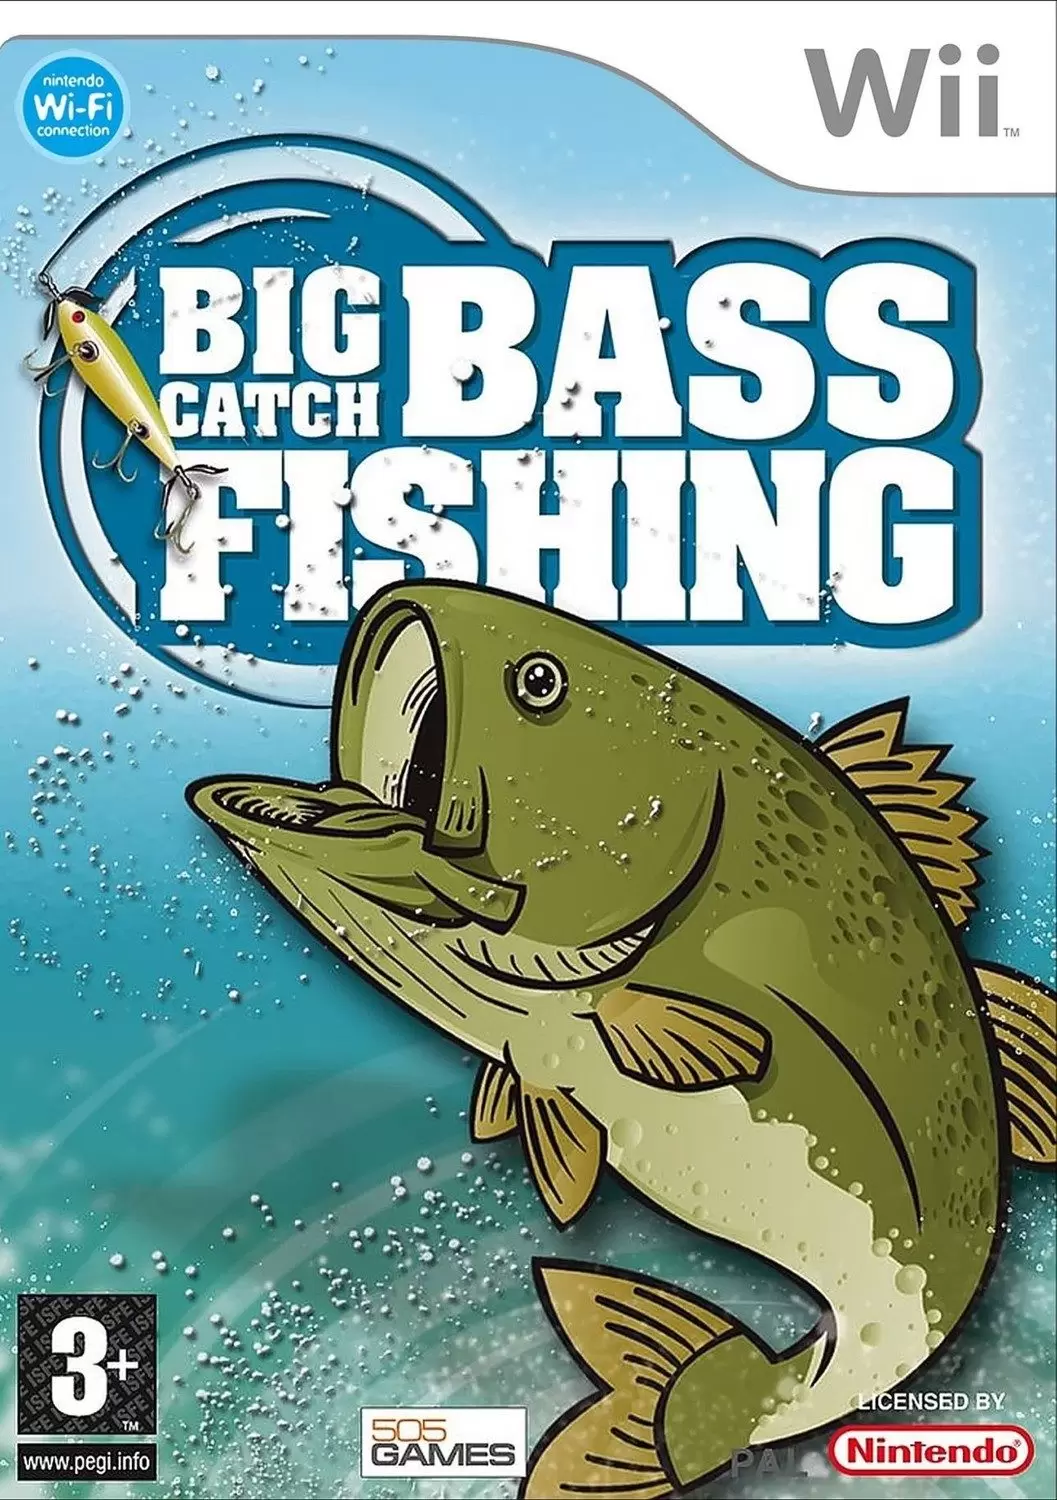 Nintendo Wii Games - Big Catch Bass Fishing